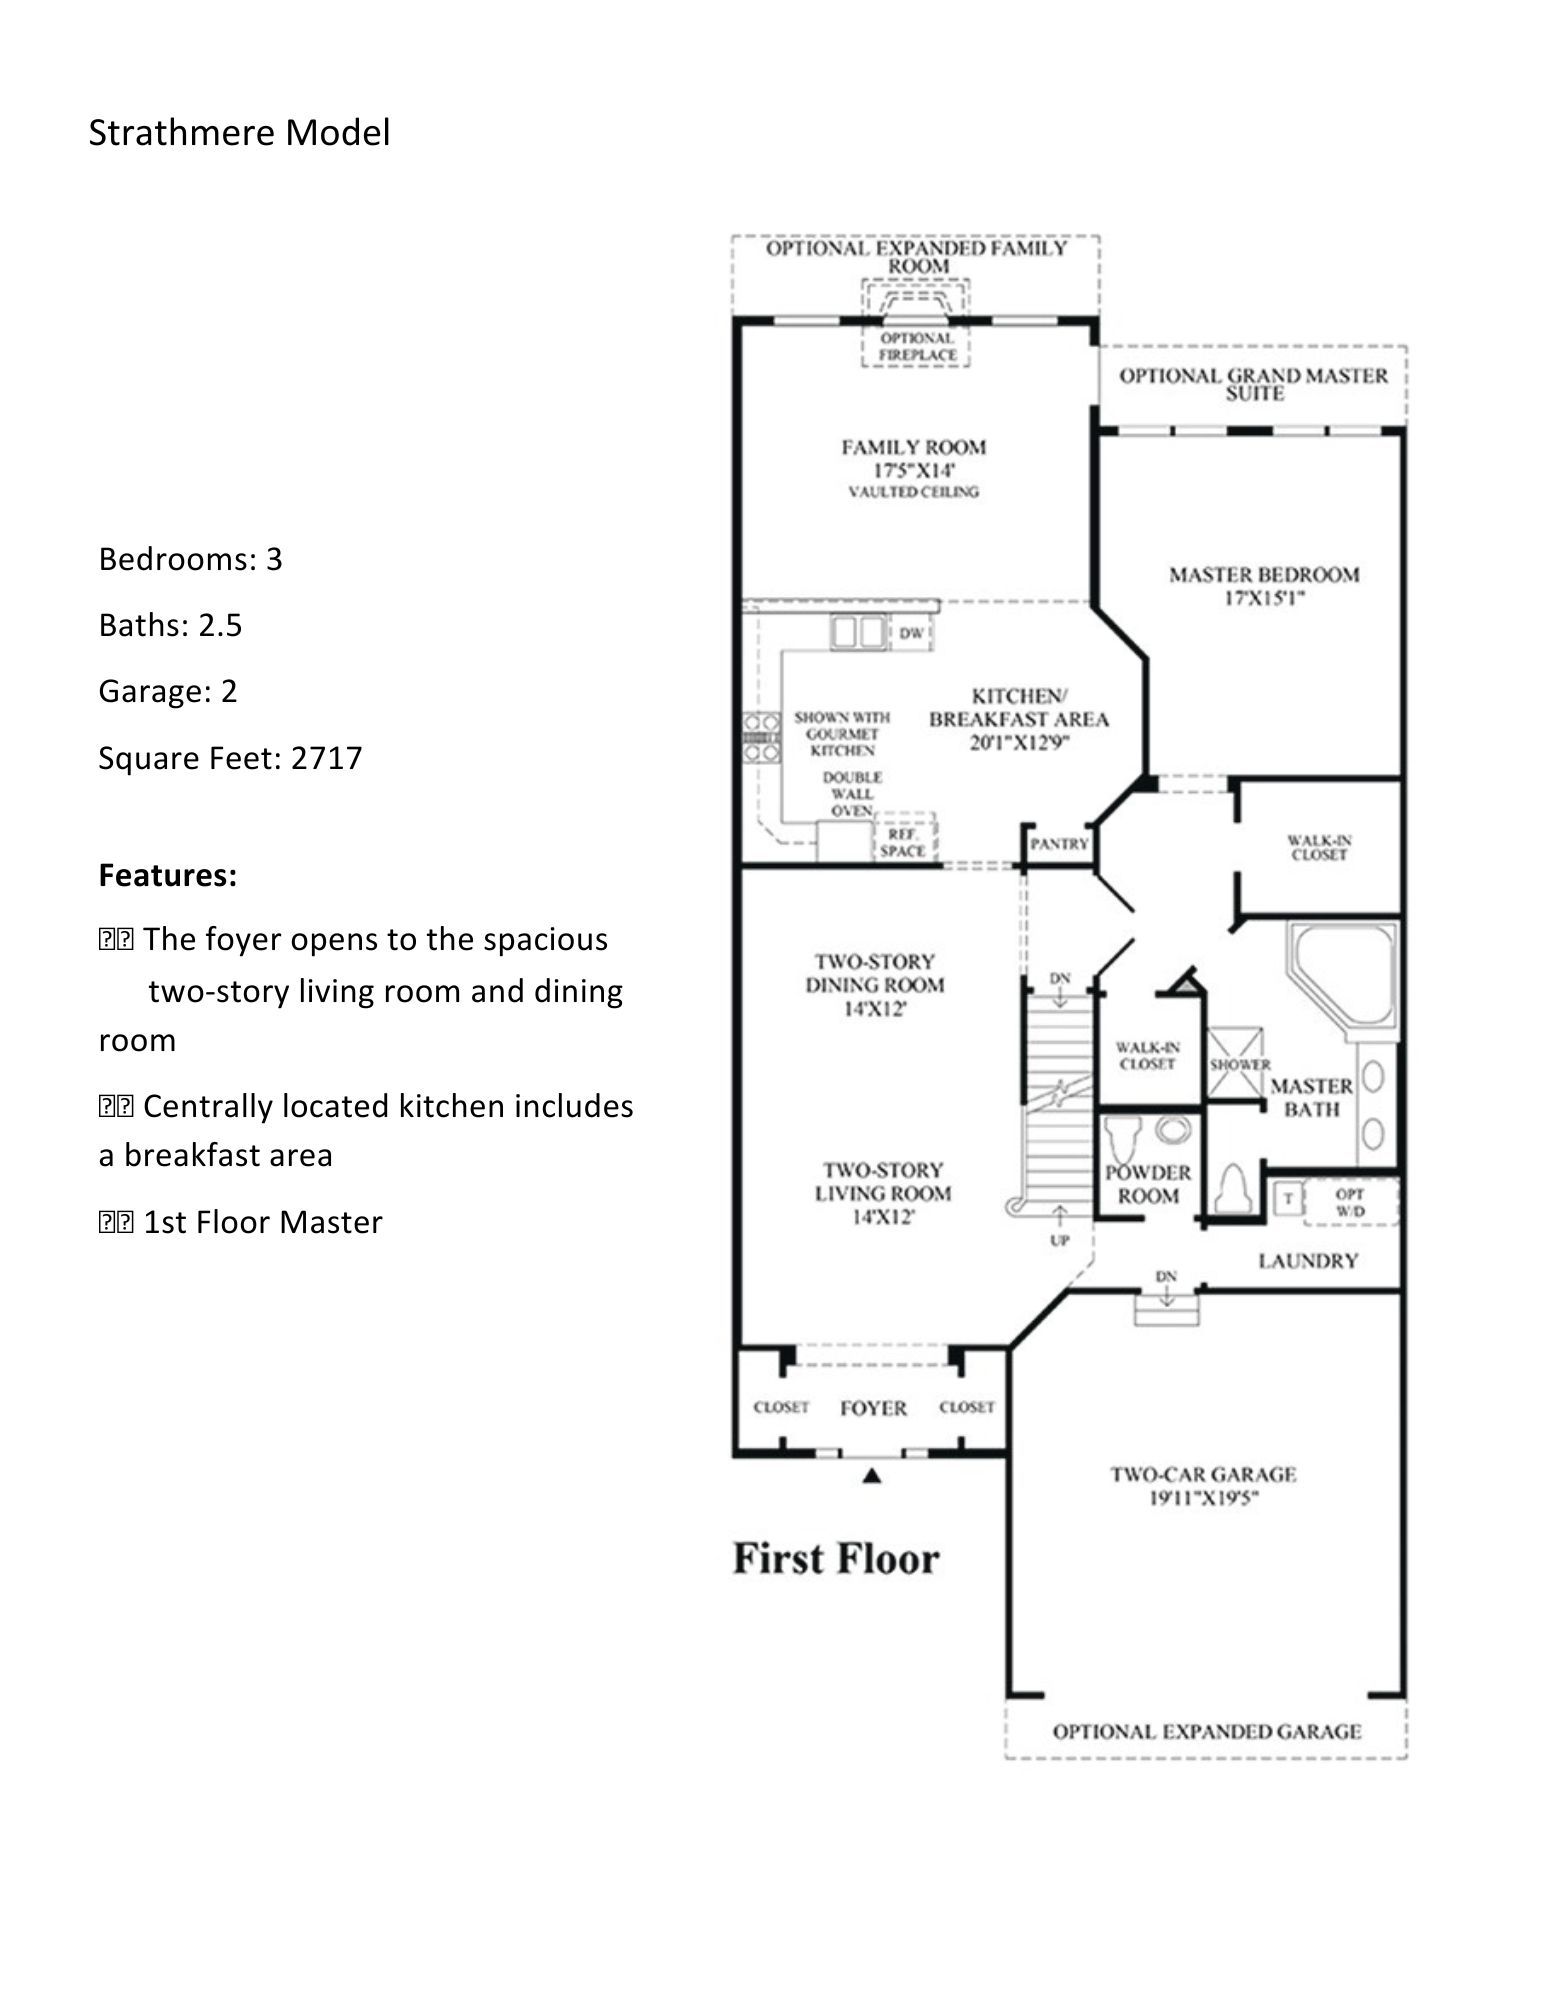 regency of yardley strathmere floor plan1